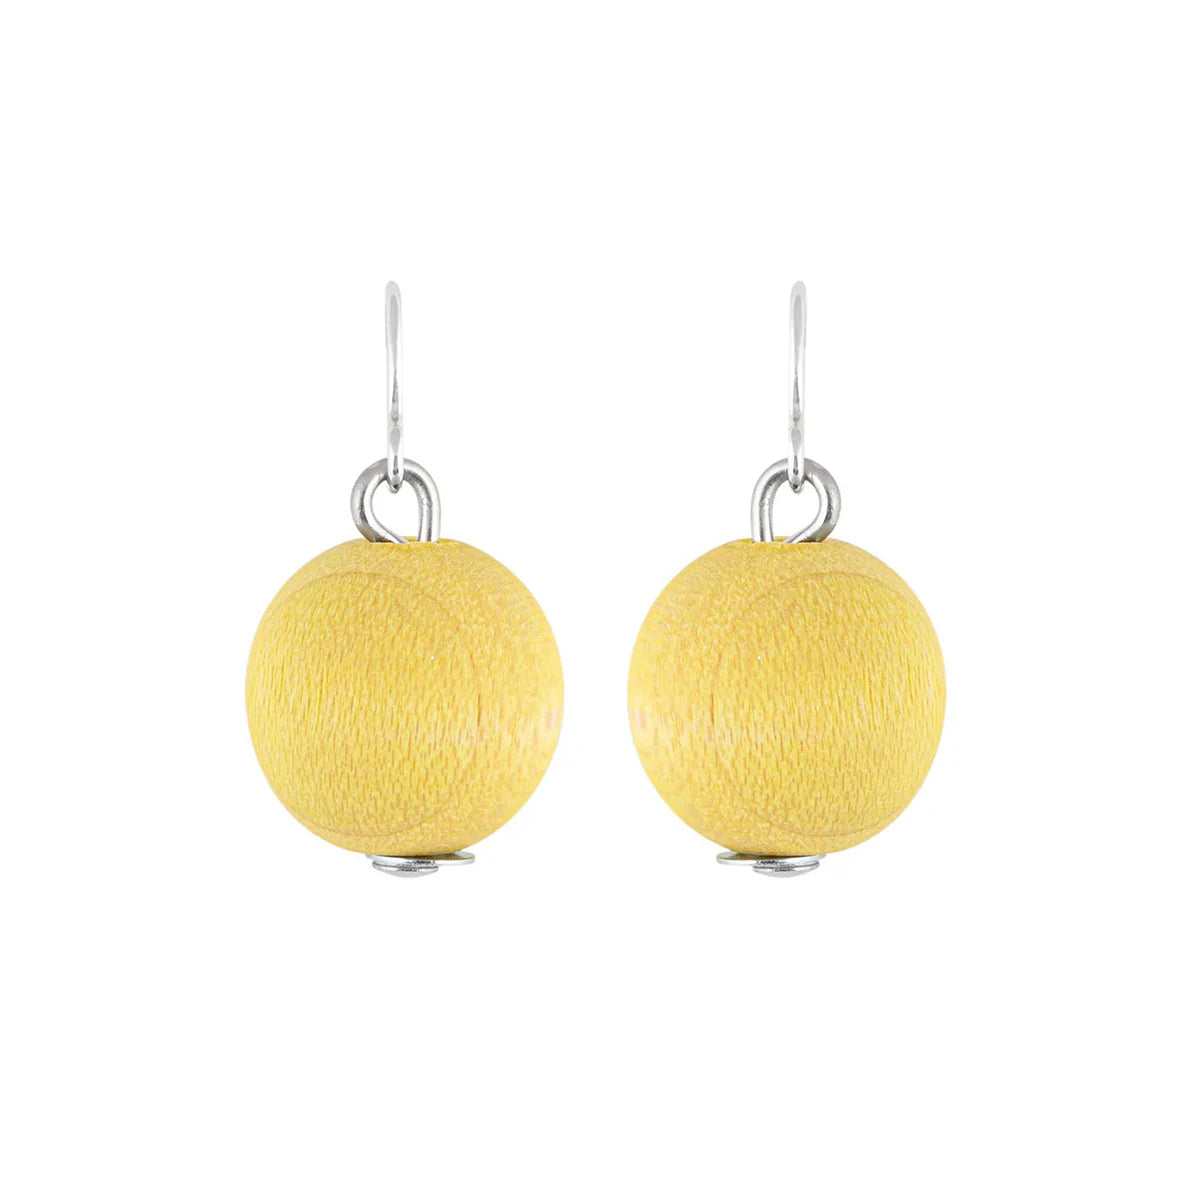 Aarikka Karpalo Earrings, Citron Yellow